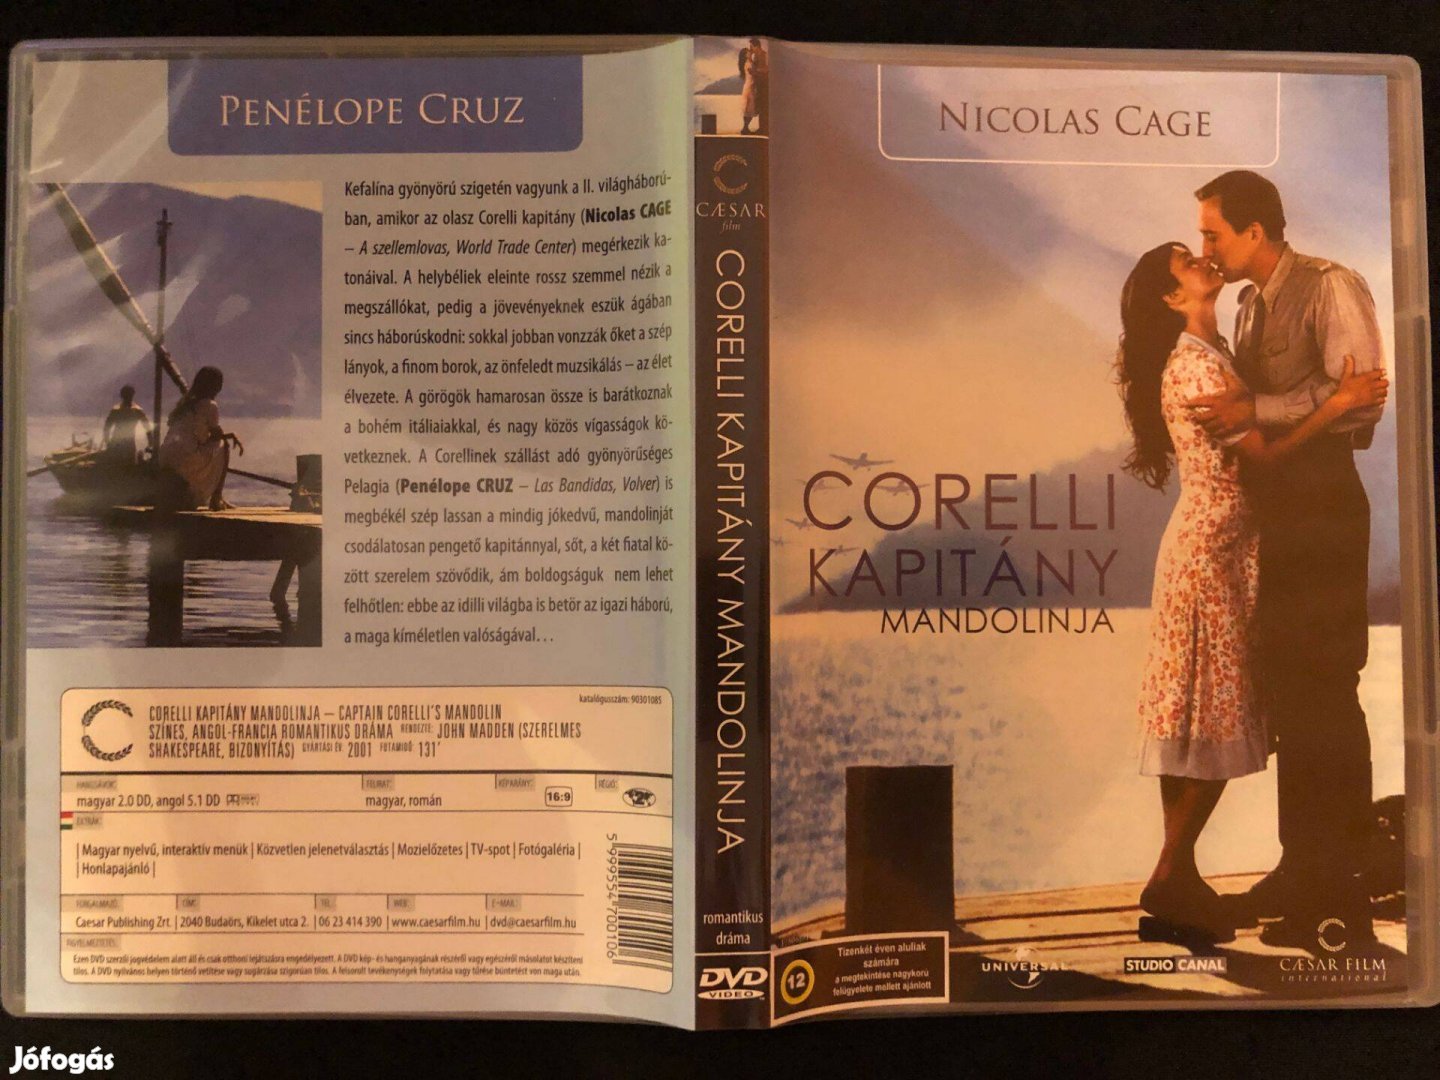 Corelli kapitány mandolinja DVD (szinkronizált, Nicolas Cage)